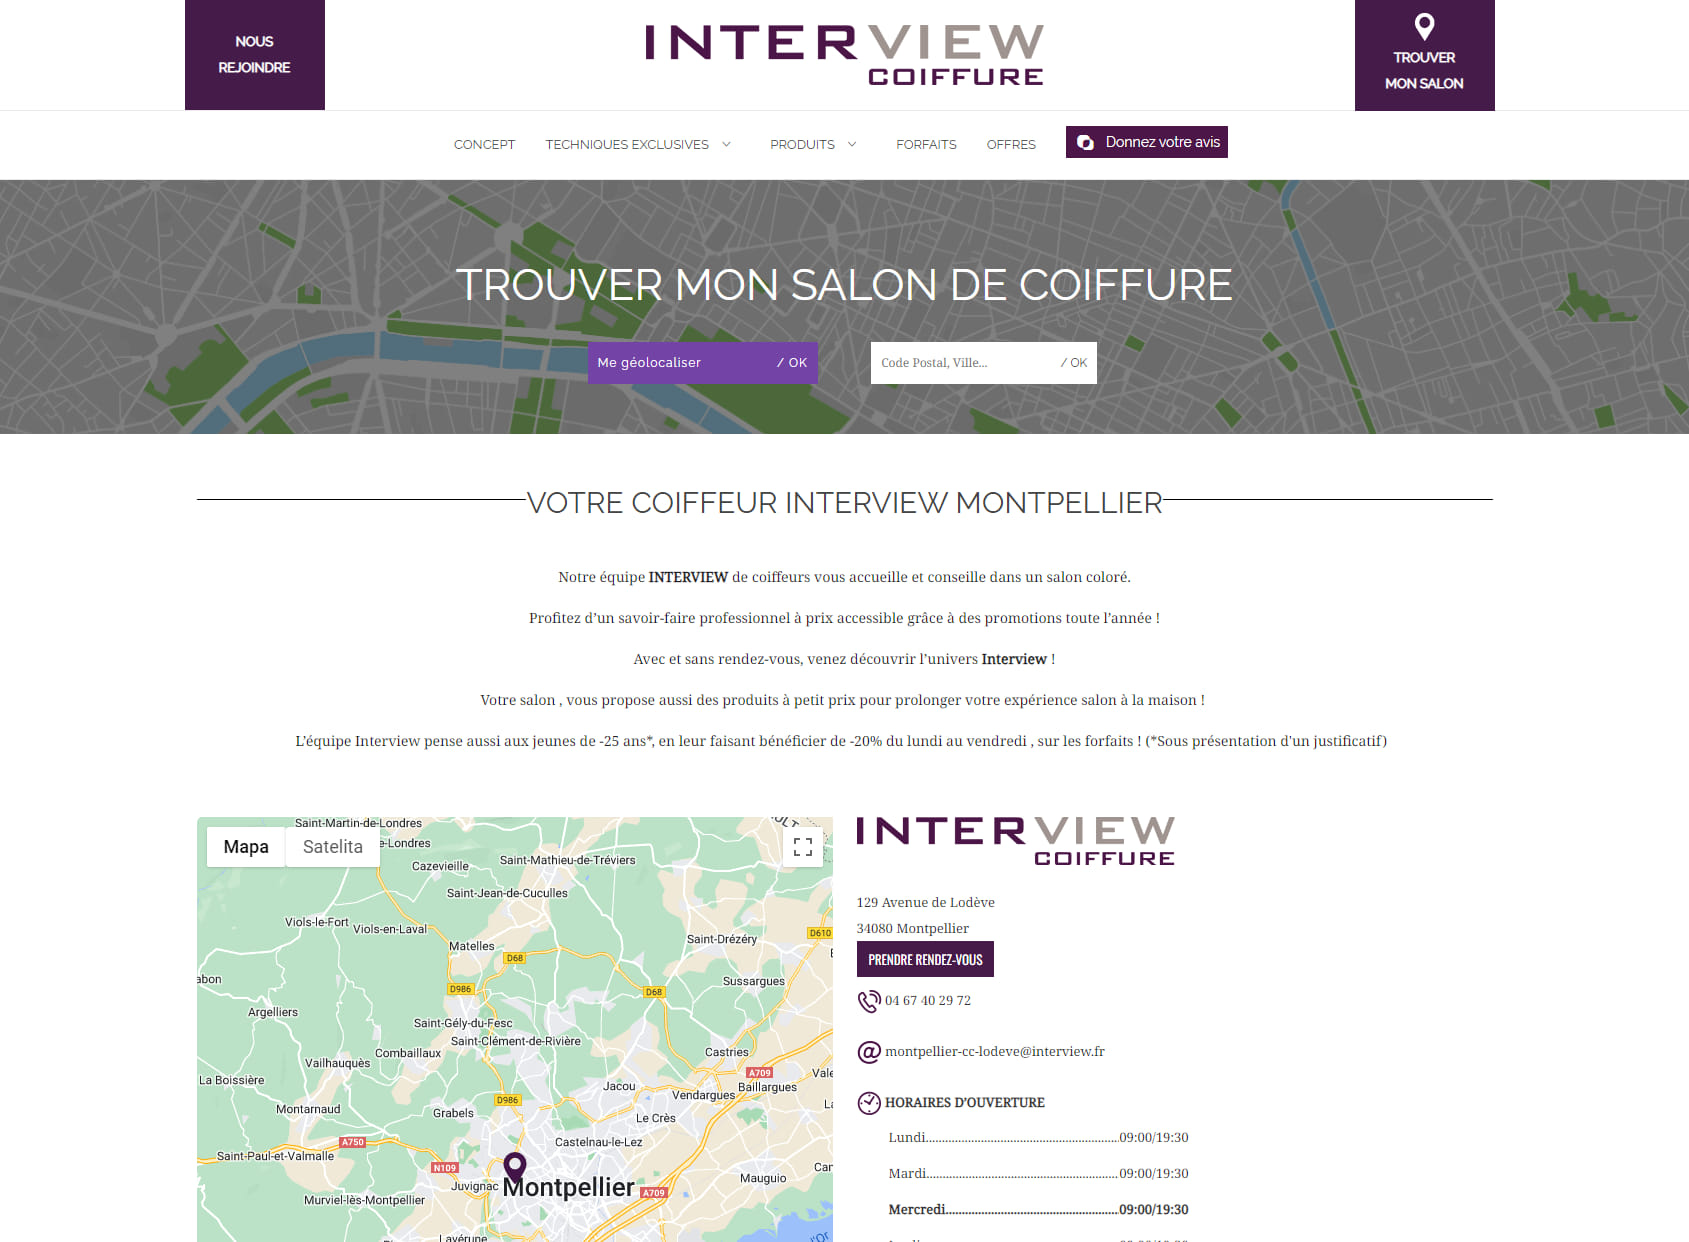 Interview Coiffure - Montpellier